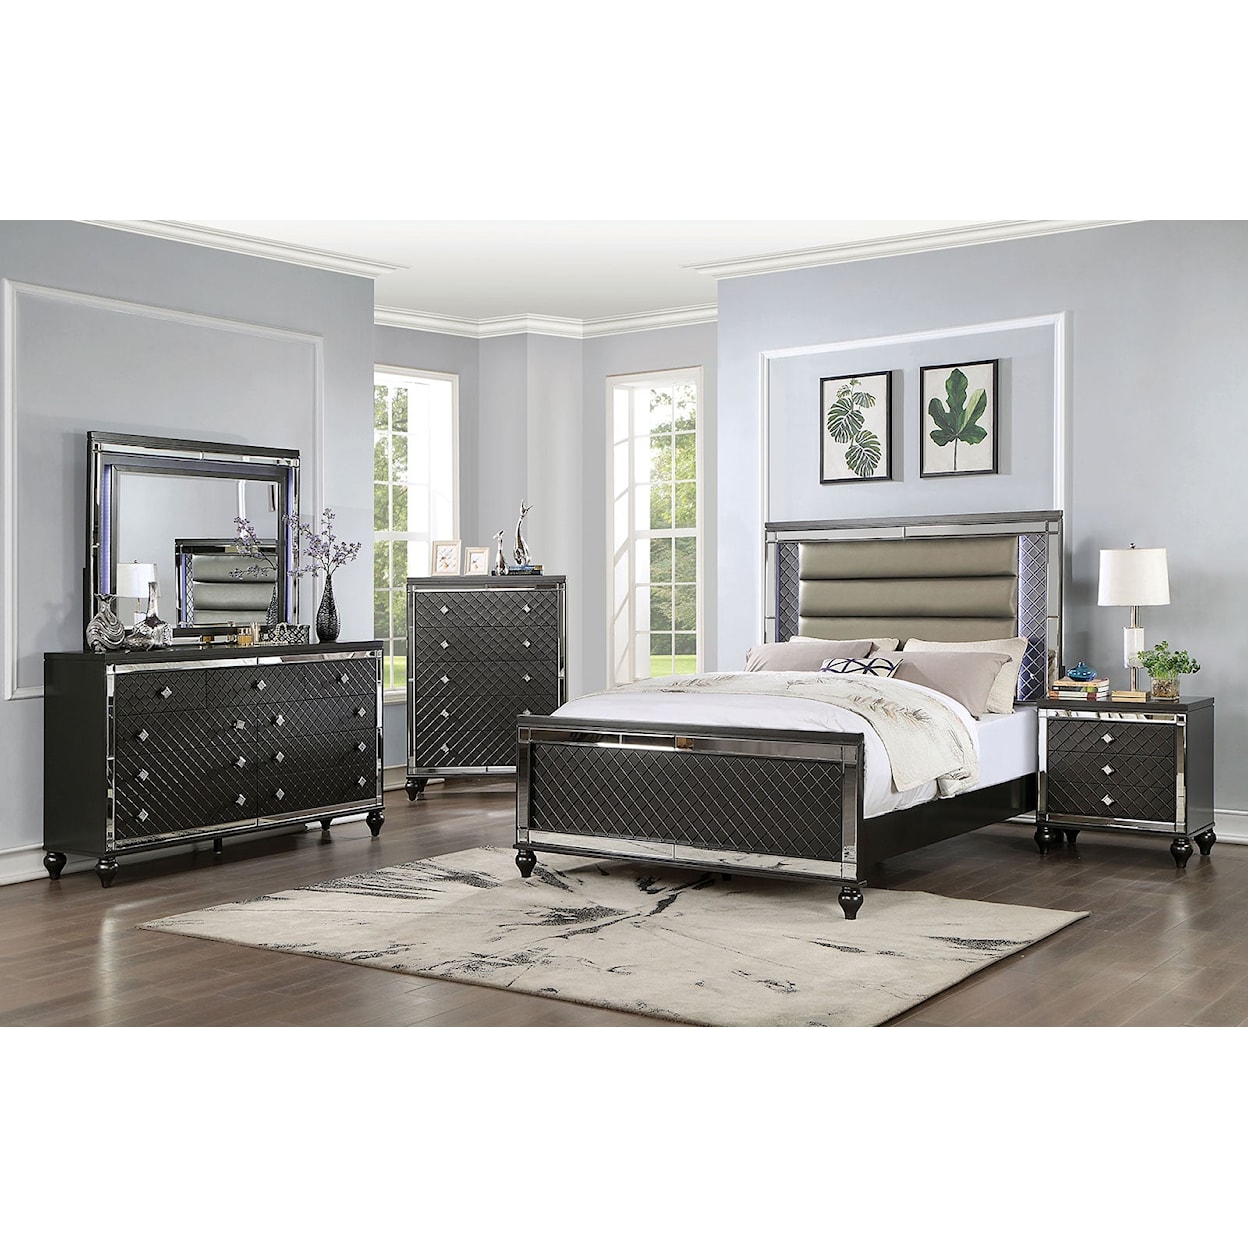 Furniture of America CALANDRIA 4-Piece Queen Bedroom Set